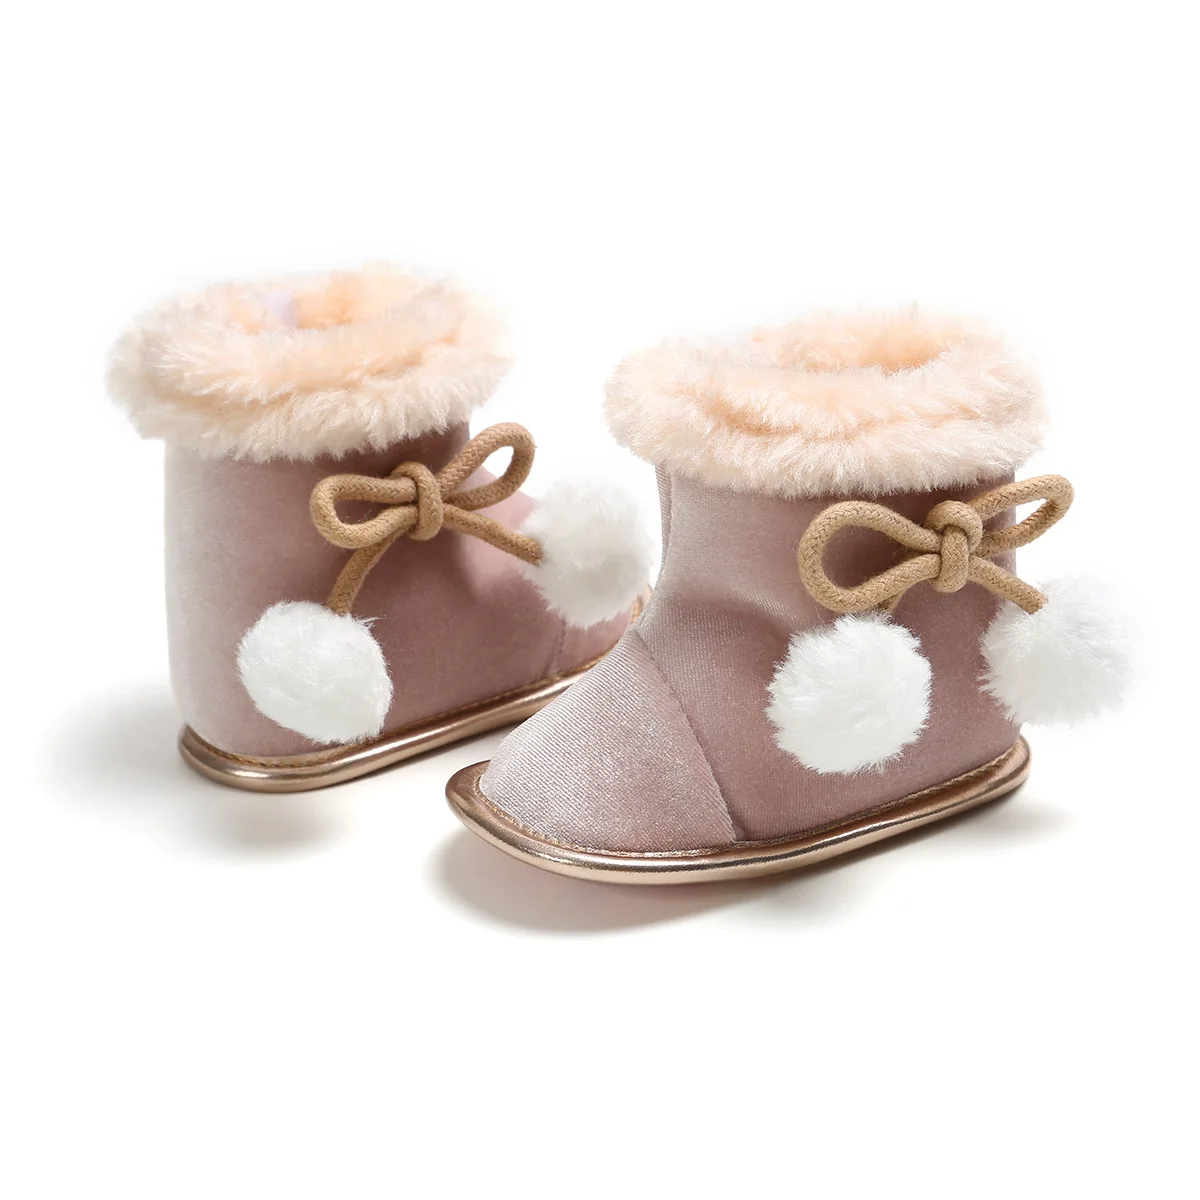 CYSINCOS/детская обувь на возраст от 0 до 18 месяцев теплые зимние ботинки новая обувь с мягкой подошвой для маленьких детей Нескользящие меховые плюшевые ботинки для первых шагов для мальчиков и девочек